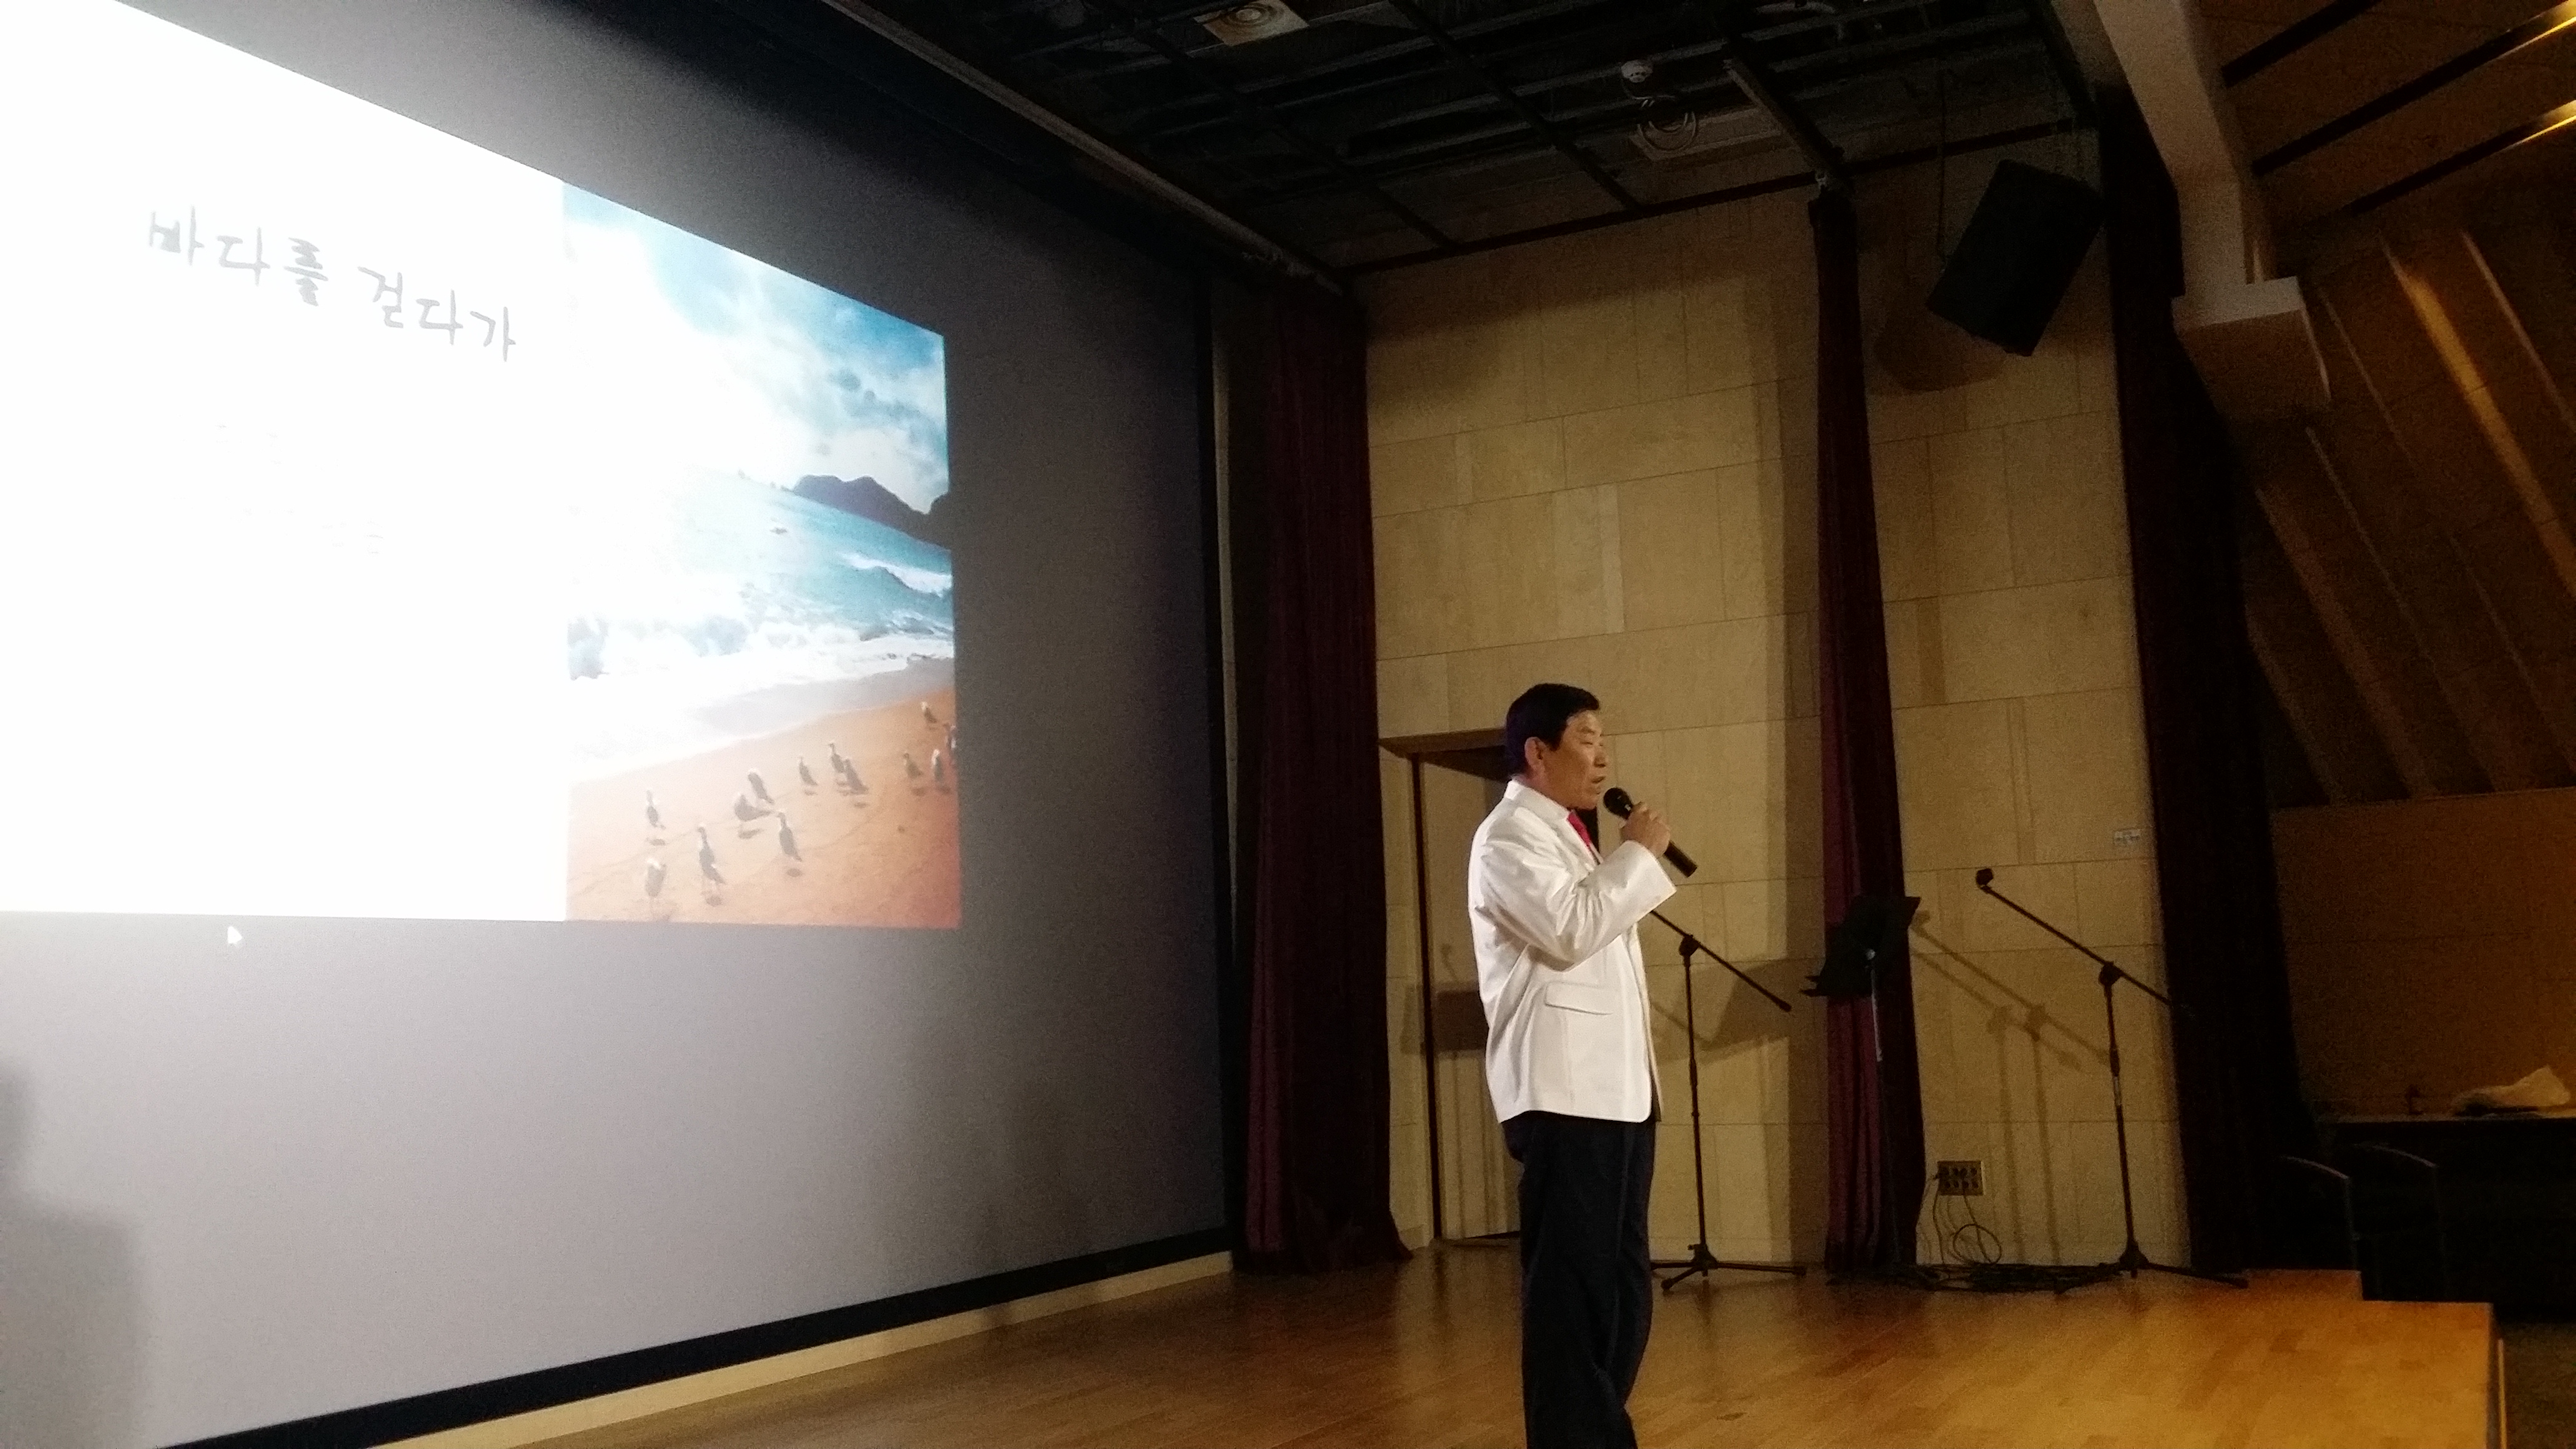 2017년 금산인삼고을도서관 하반기 상설프로그램 발표회 (처음) 첨부 이미지 #